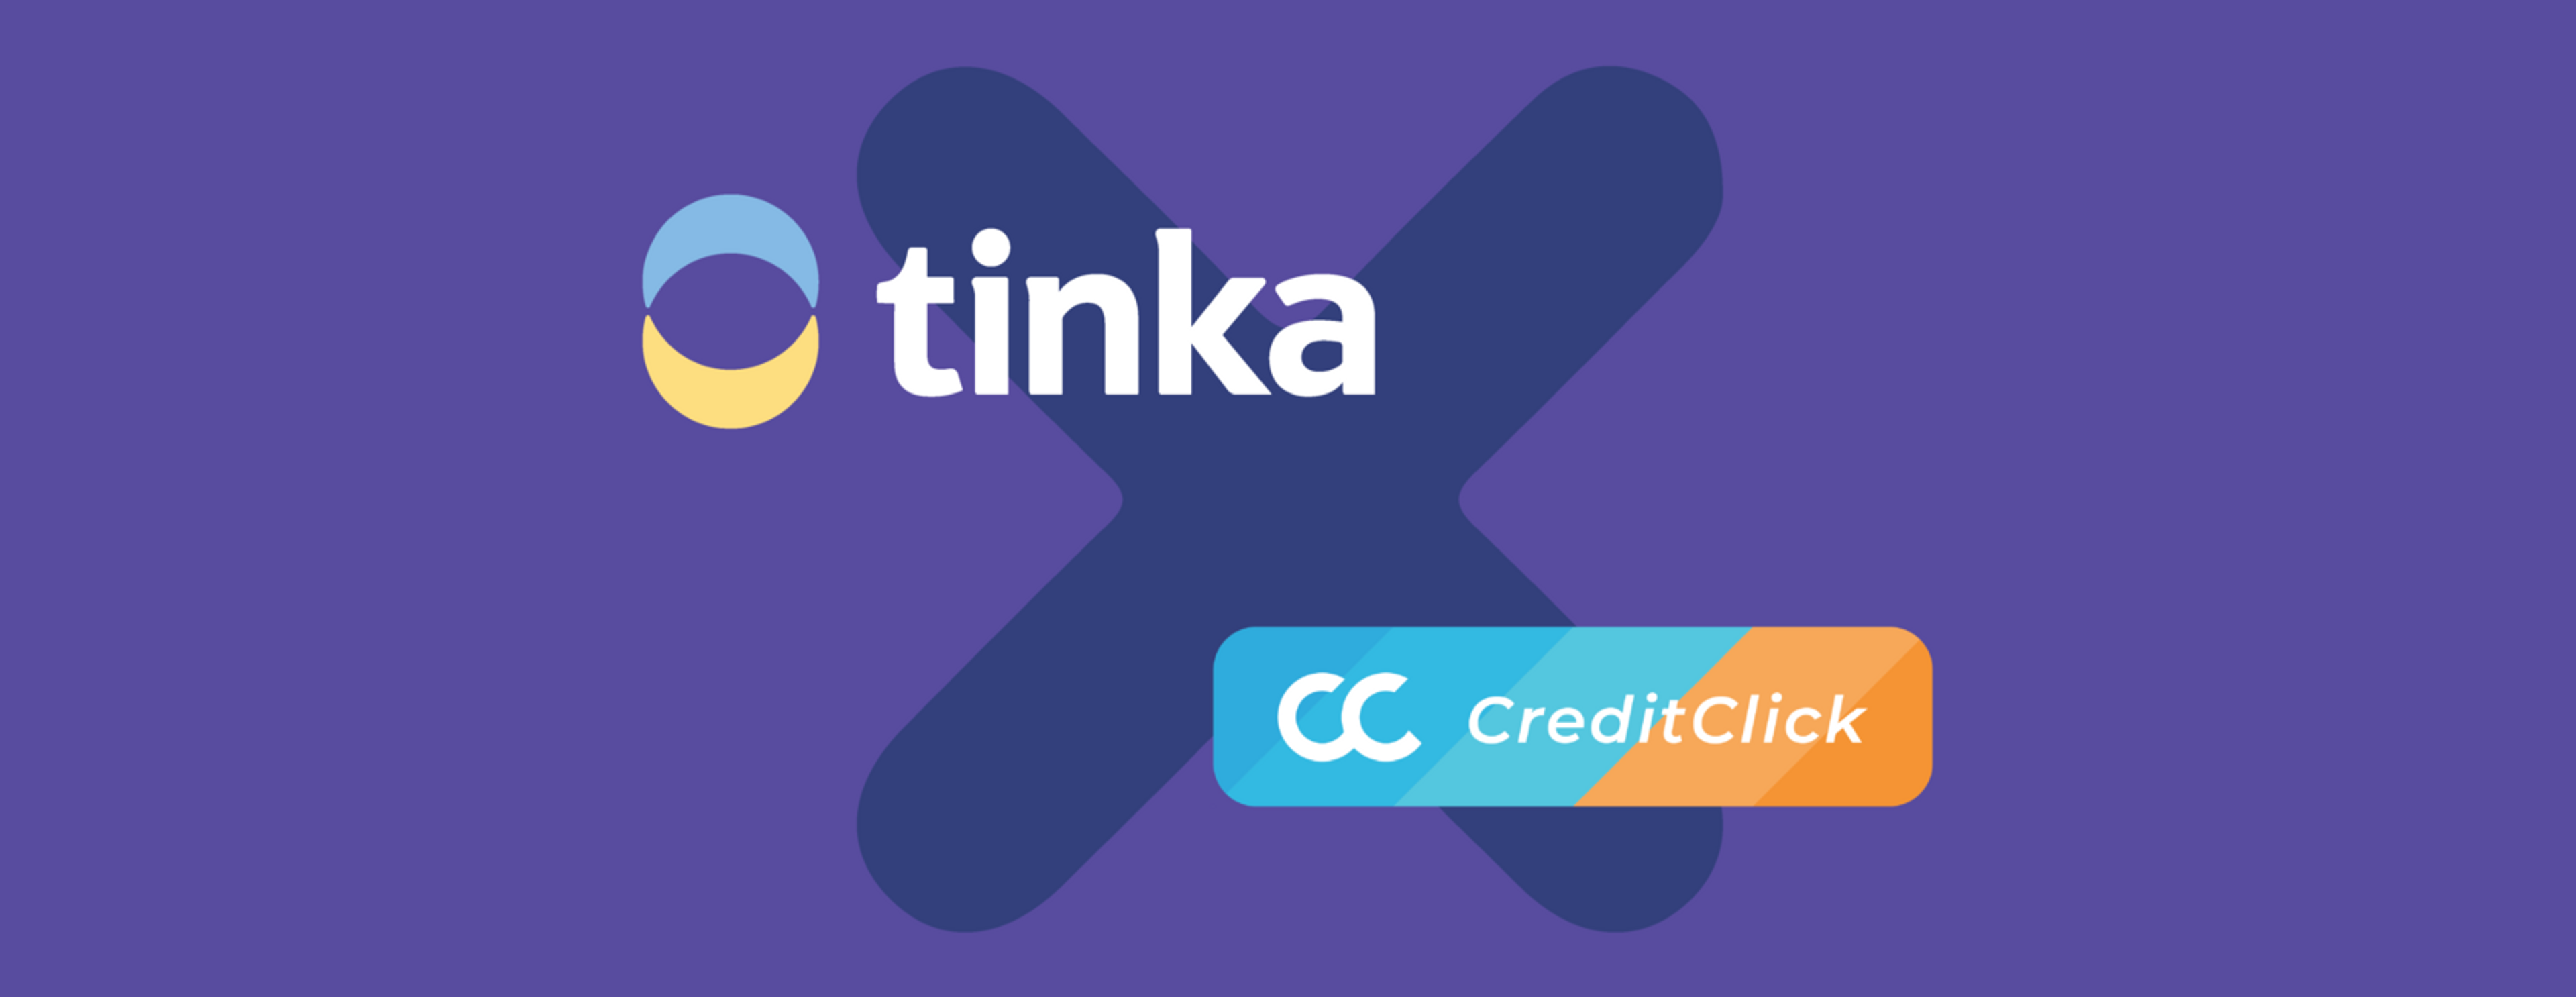 Tinka x CreditClick = meer verantwoord krediet